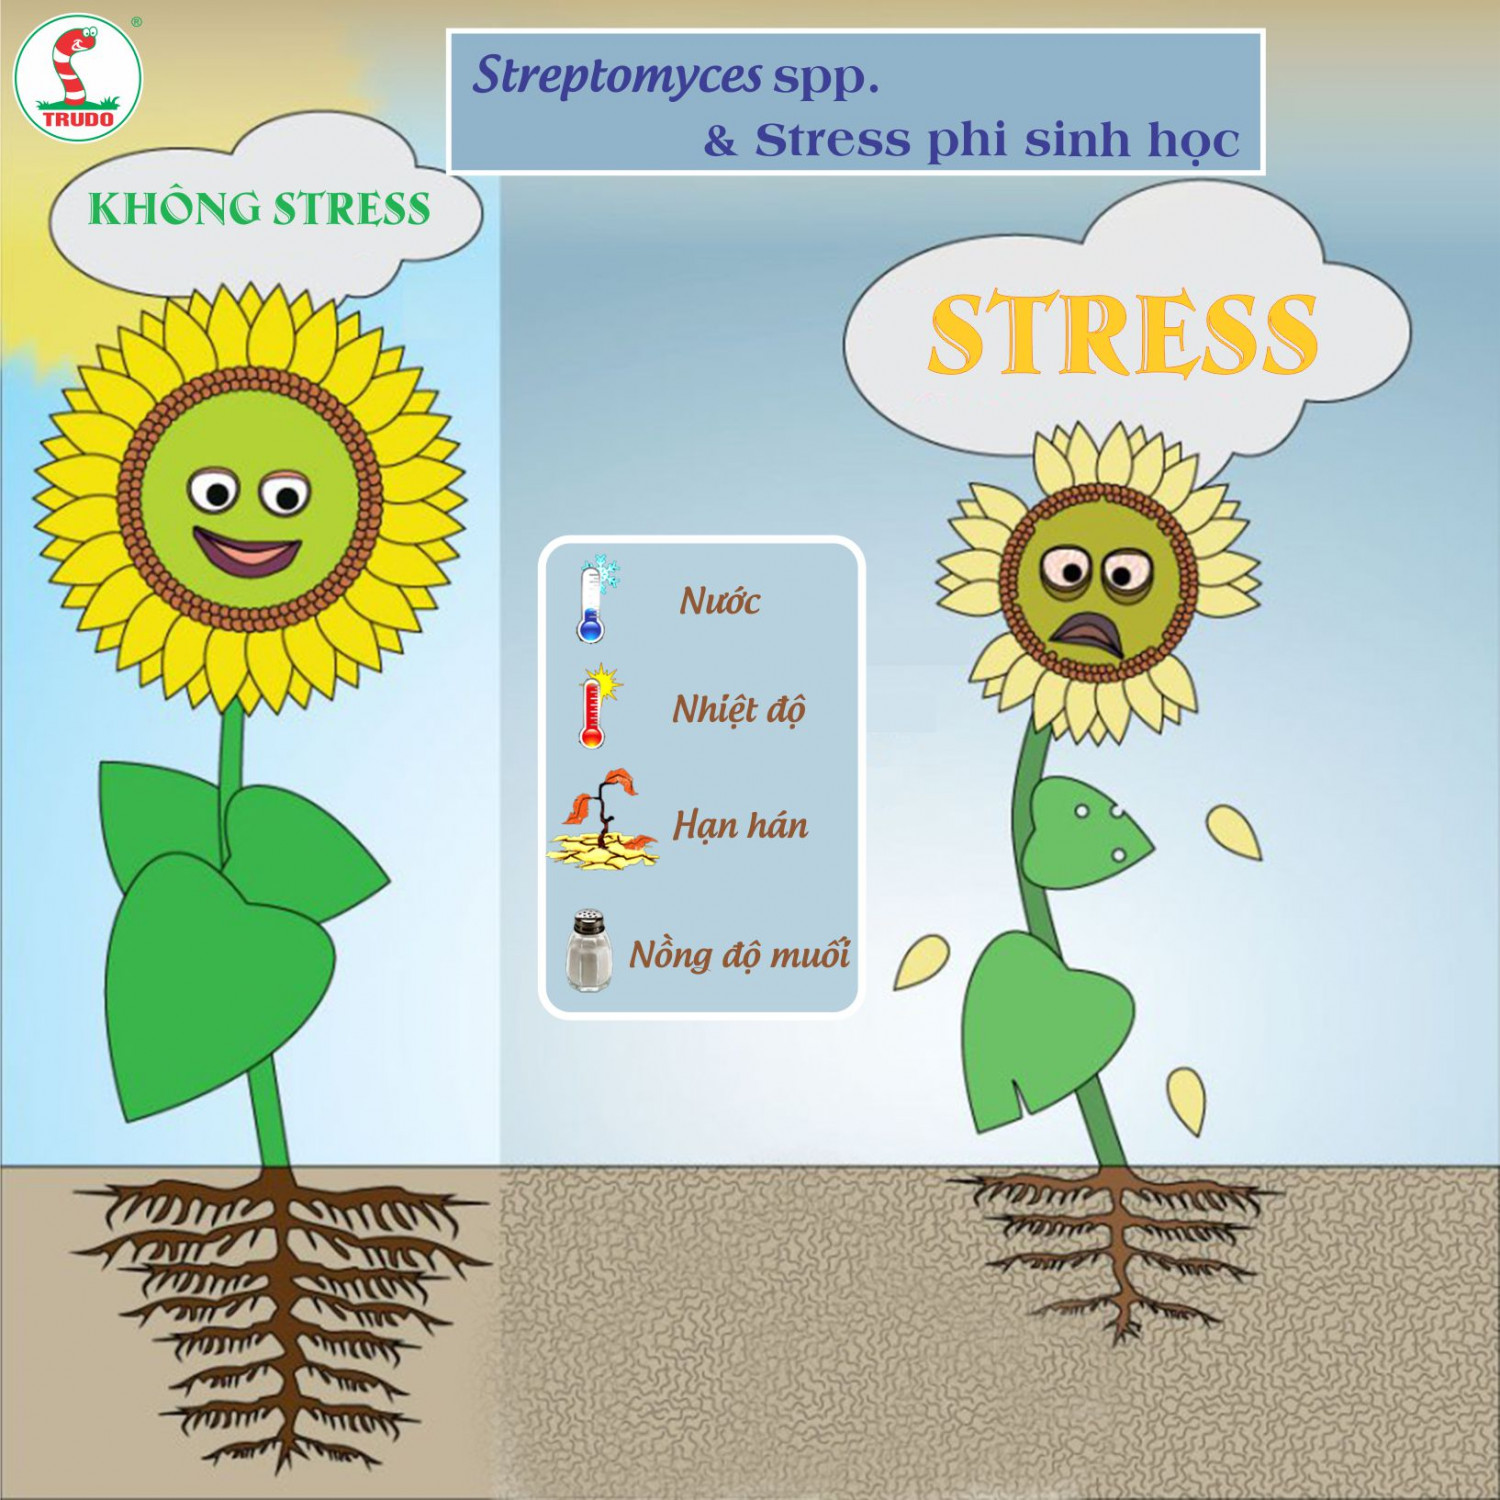 Streptomyces spp. và stress phi sinh học 